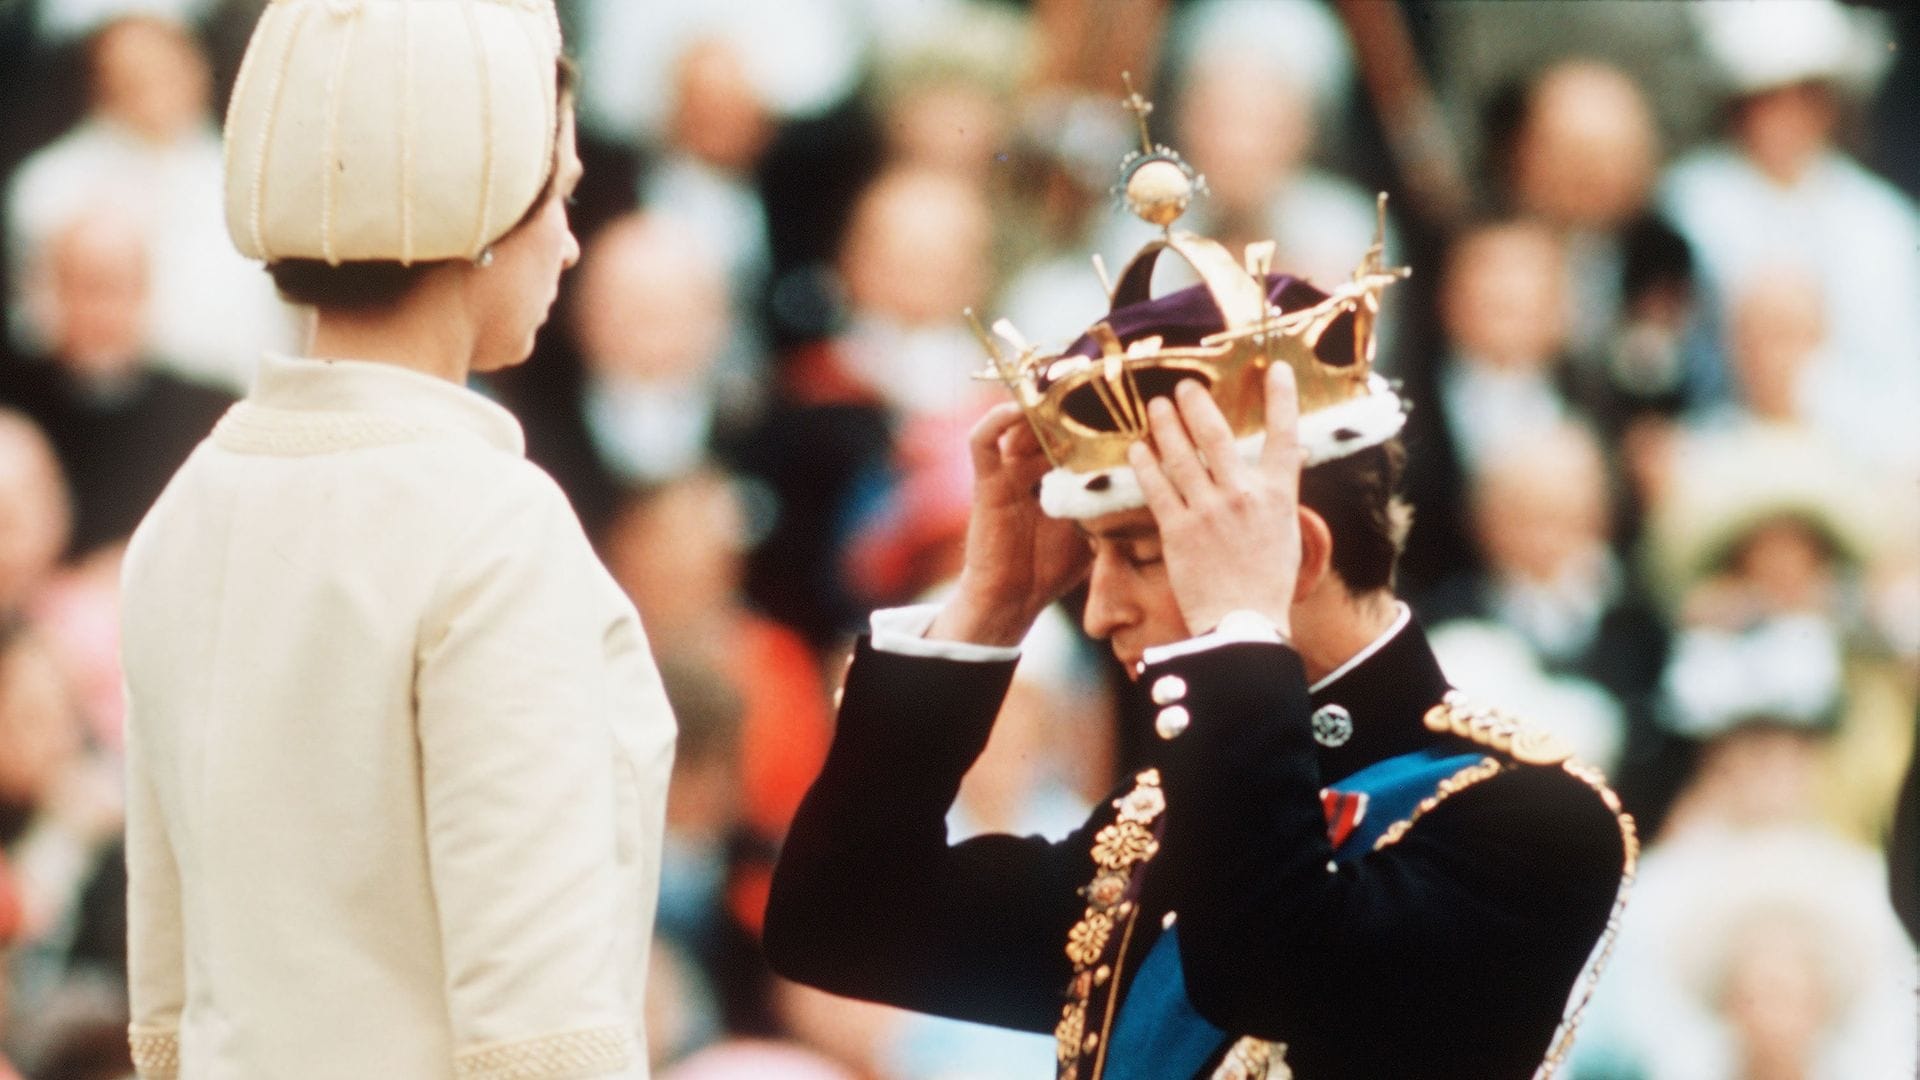 Investidura de Carlos III como príncipe de Gales el 1 de julio de 1969 ante Isabel II